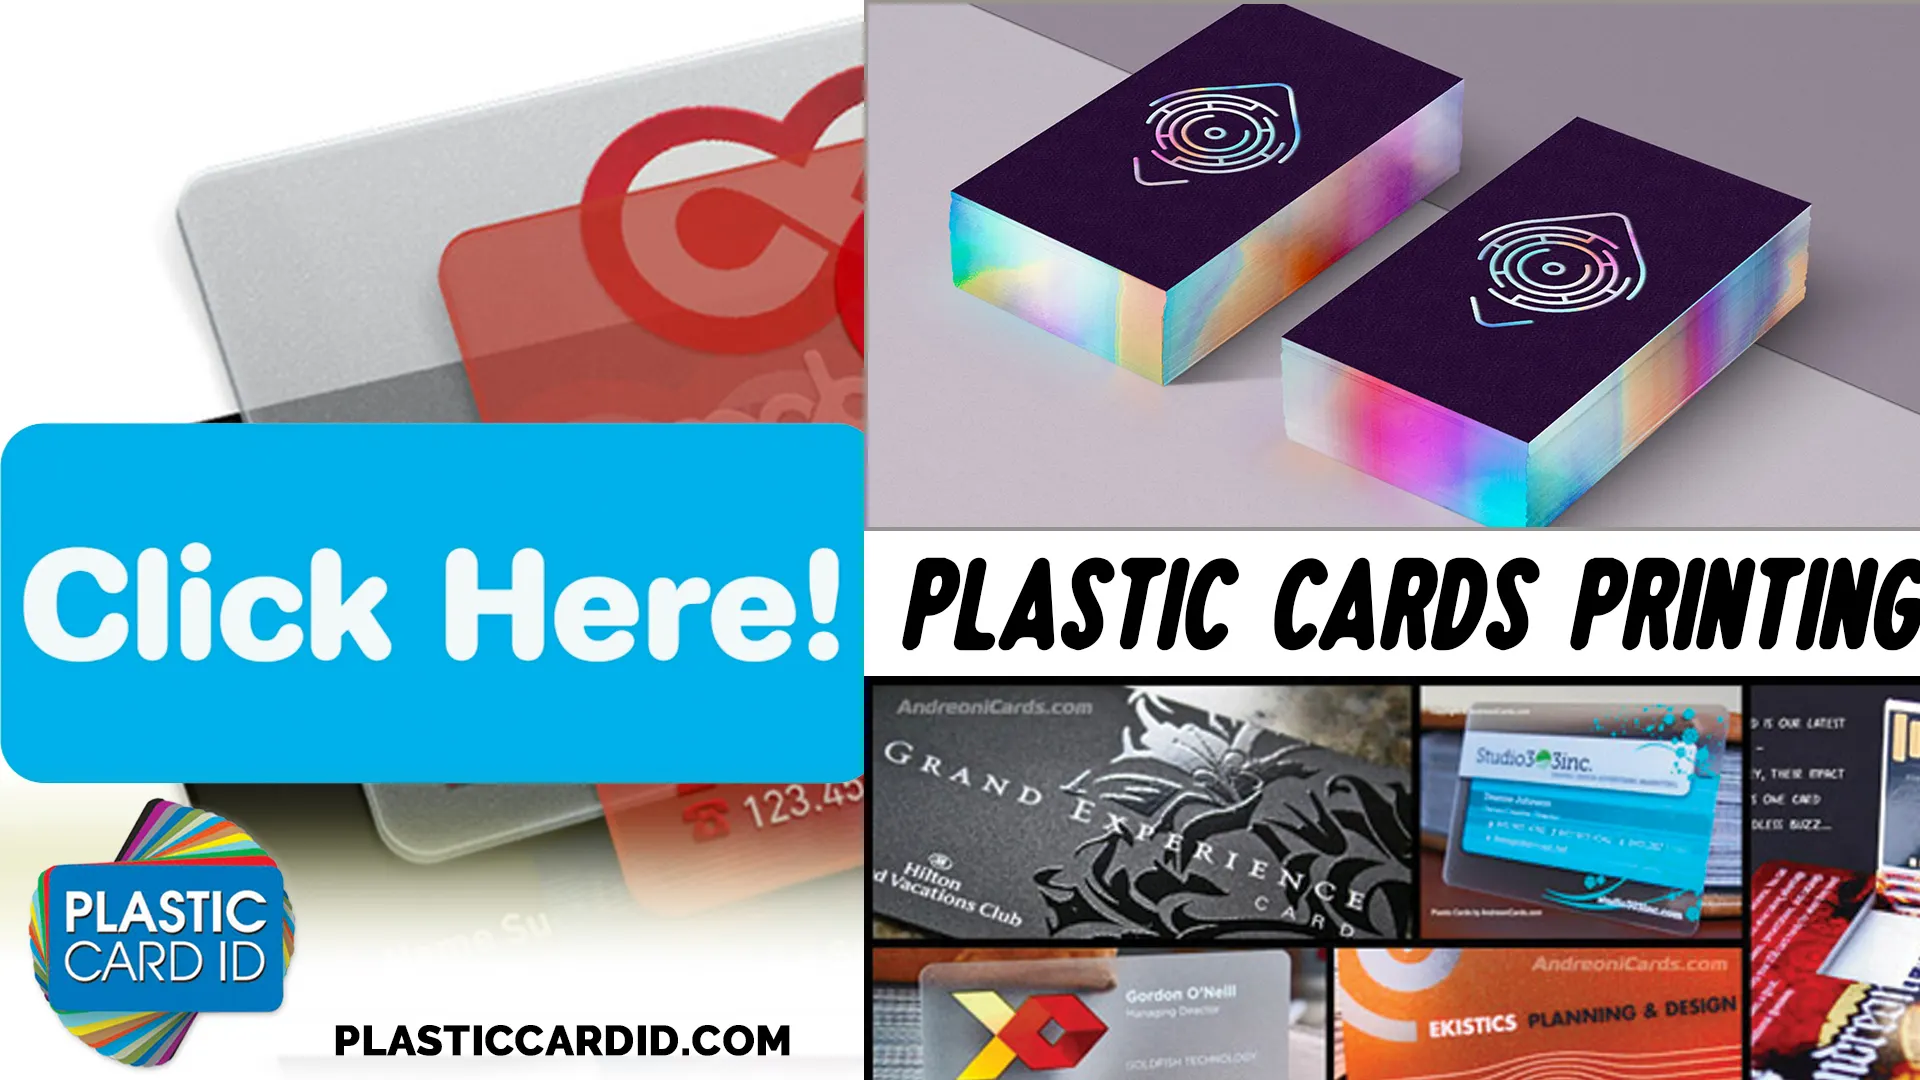 Understanding the ROI of Premium Plastic Cards